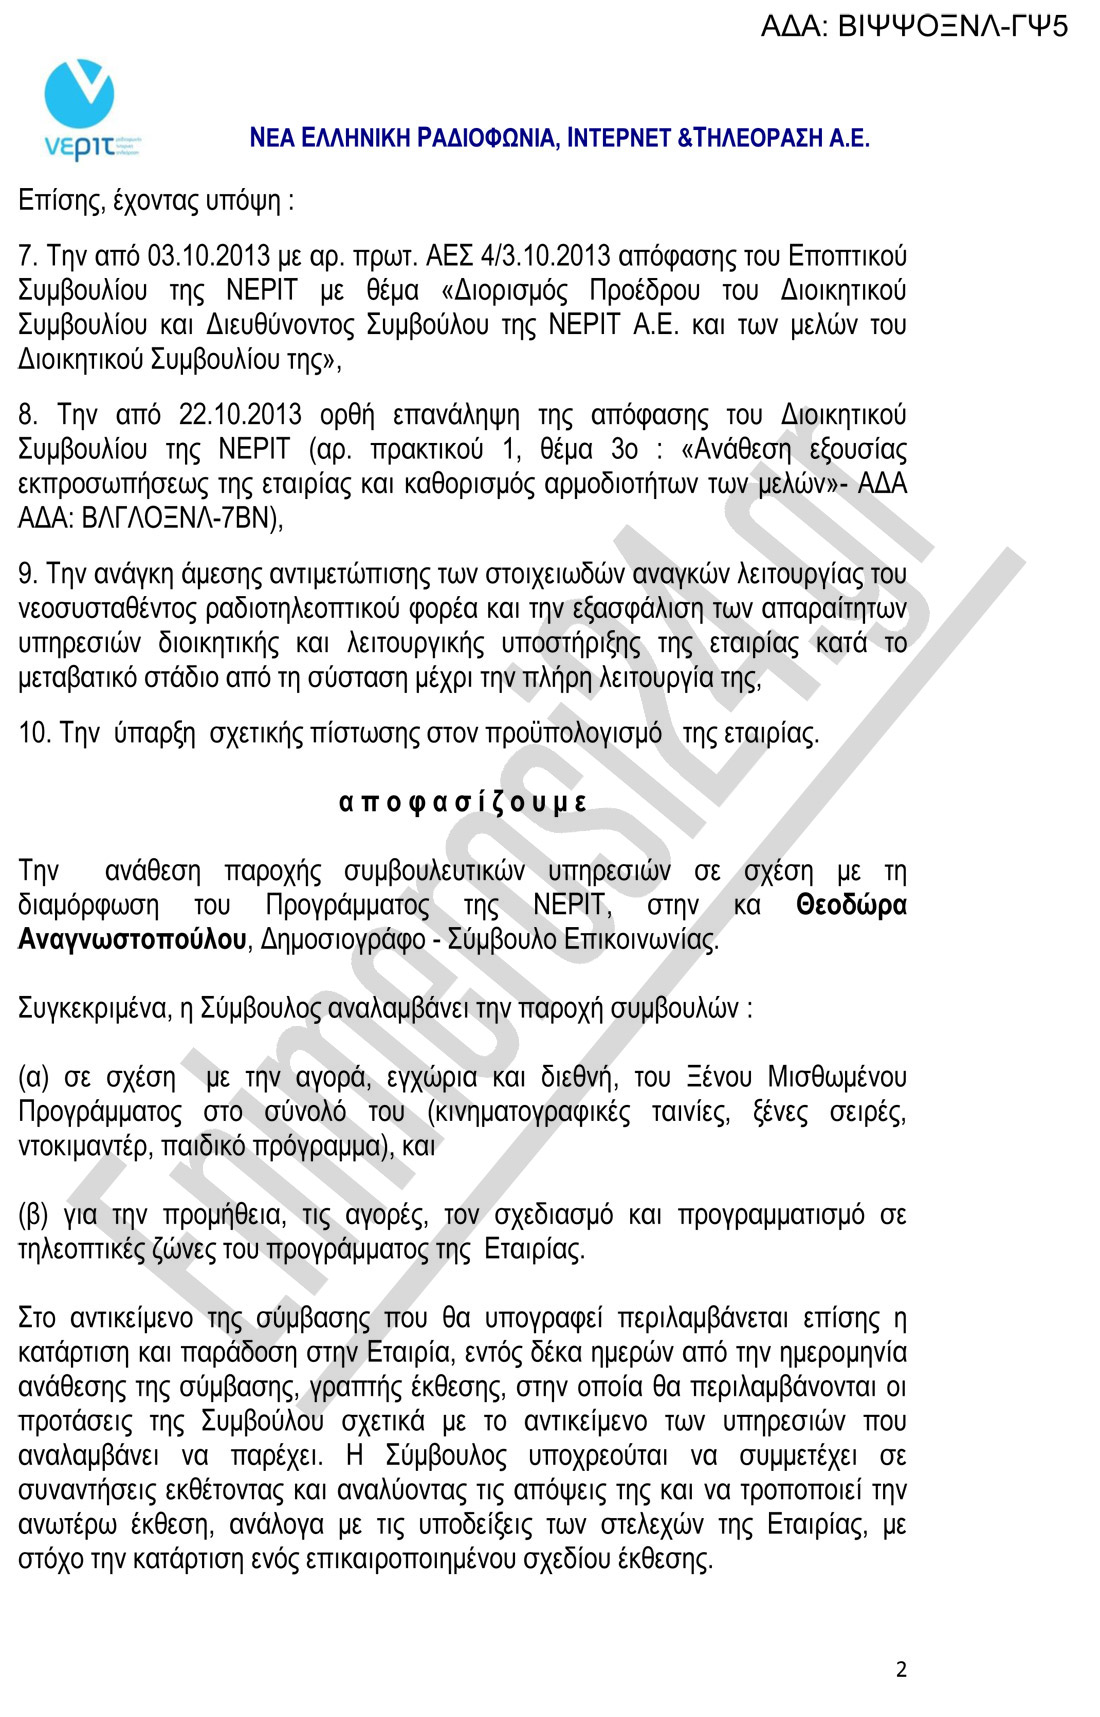 Σκάνδαλο: δίνουν 6.900 στη δημοσιογράφο Θ. Αναγνωστοπούλου για να βρει πρόγραμμα (έγγραφο)